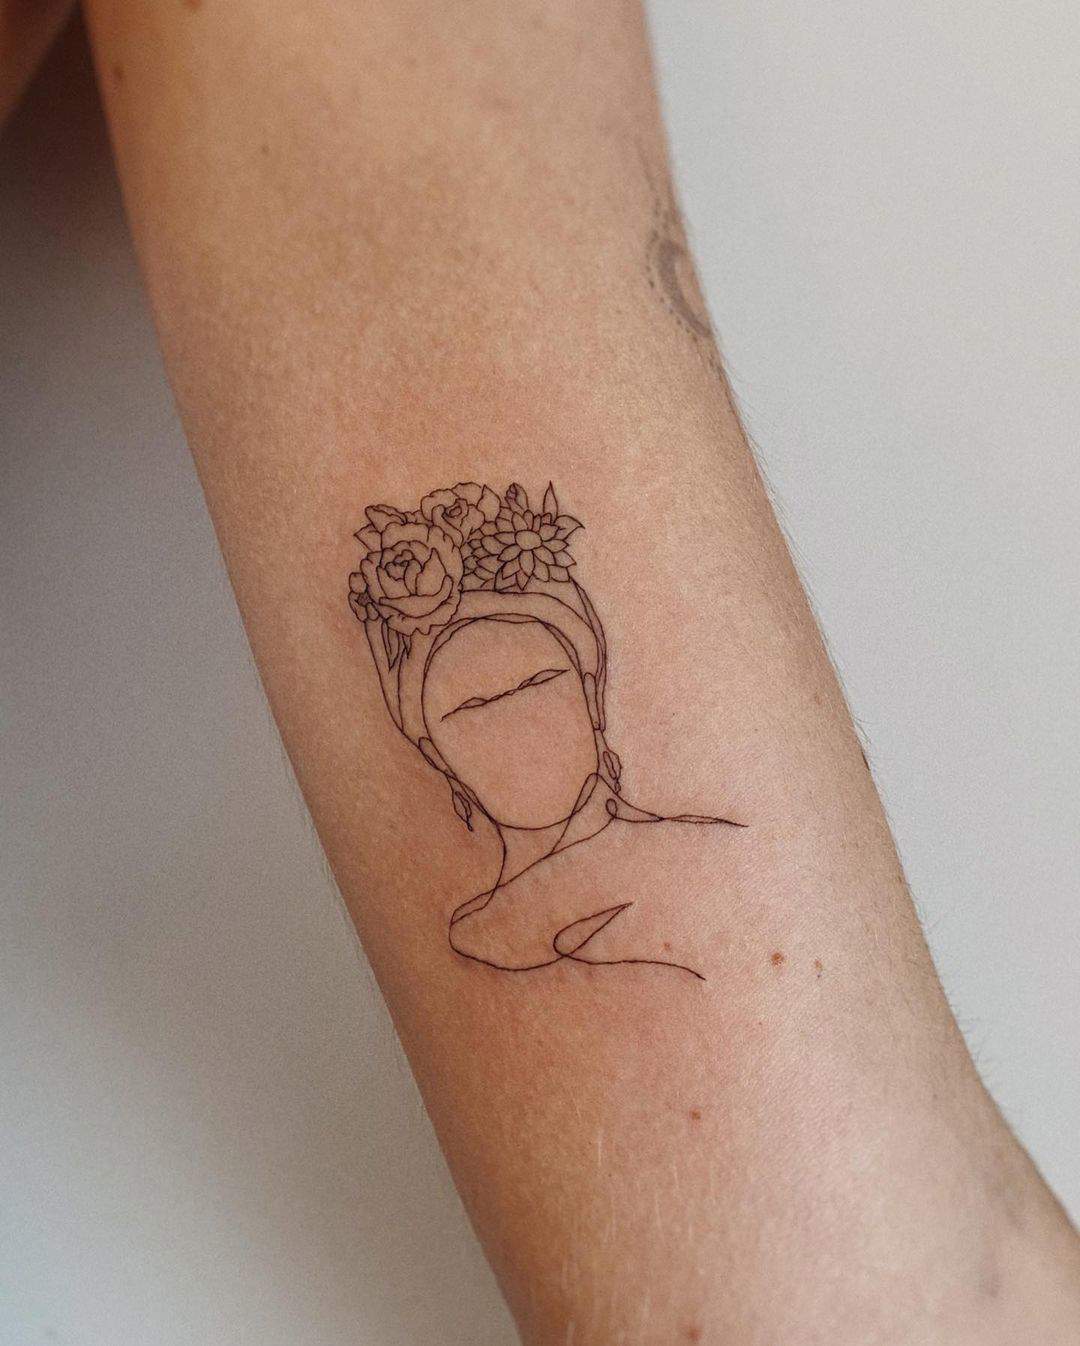 Tattoo de Frida Kahlo en el brazo